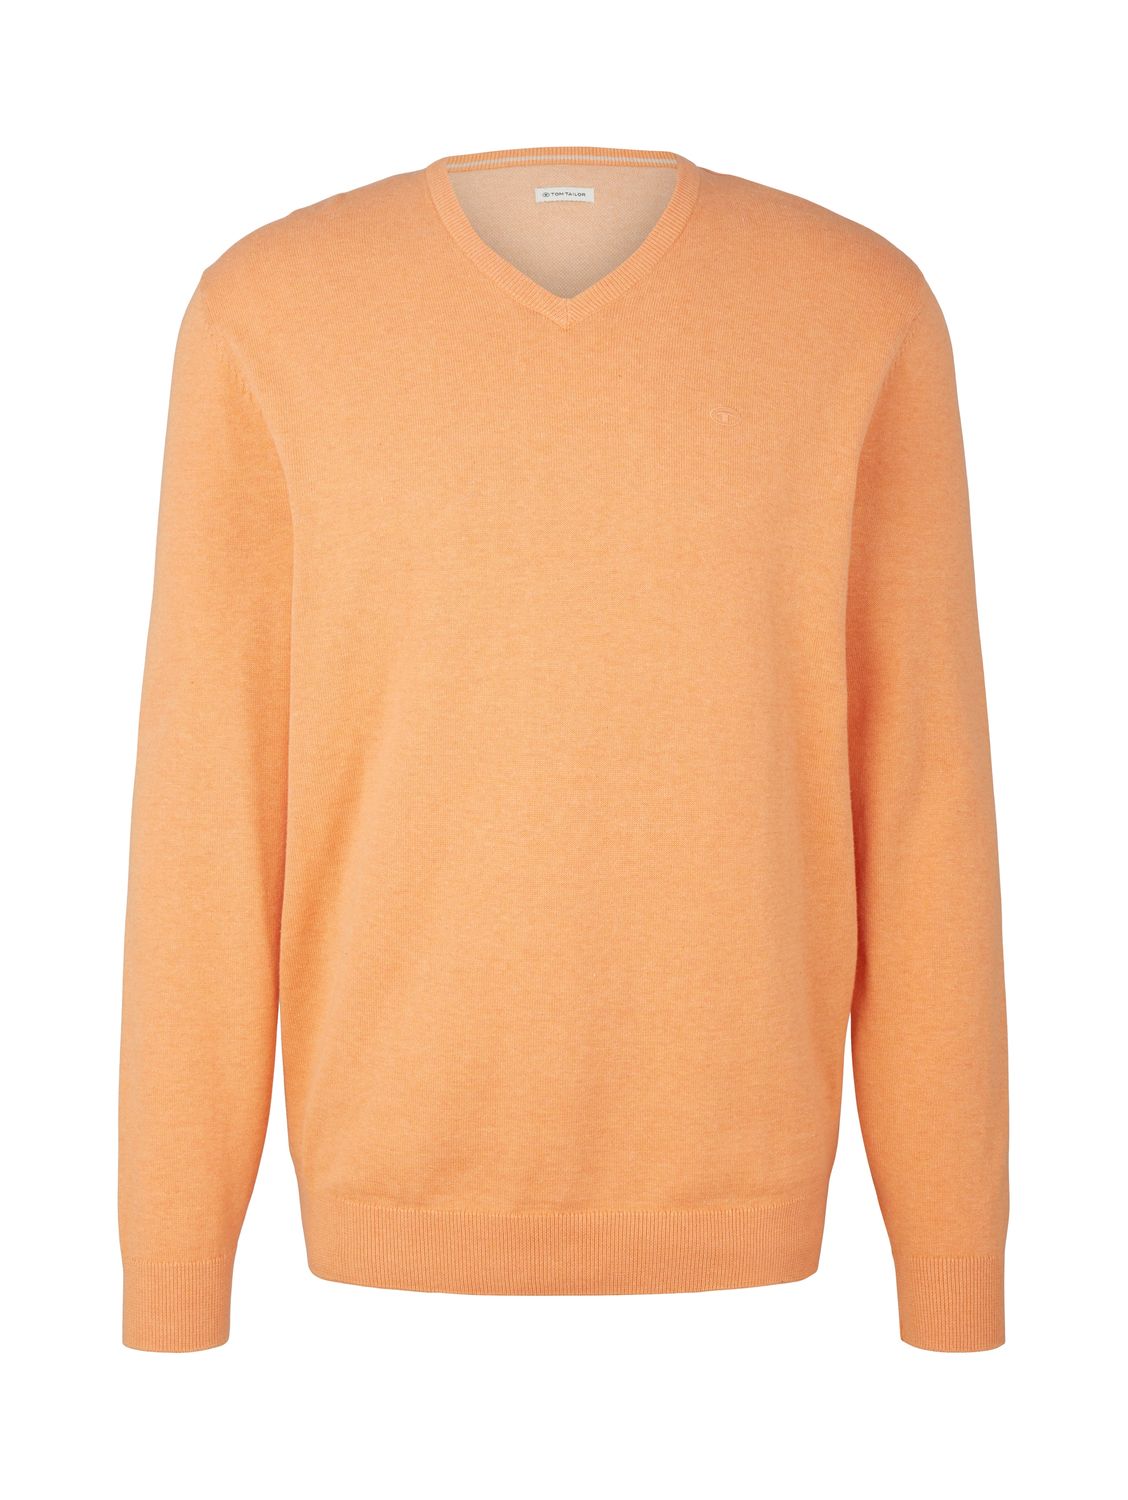 Пуловер Tom Tailor Basic V Neck, оранжевый цена и фото